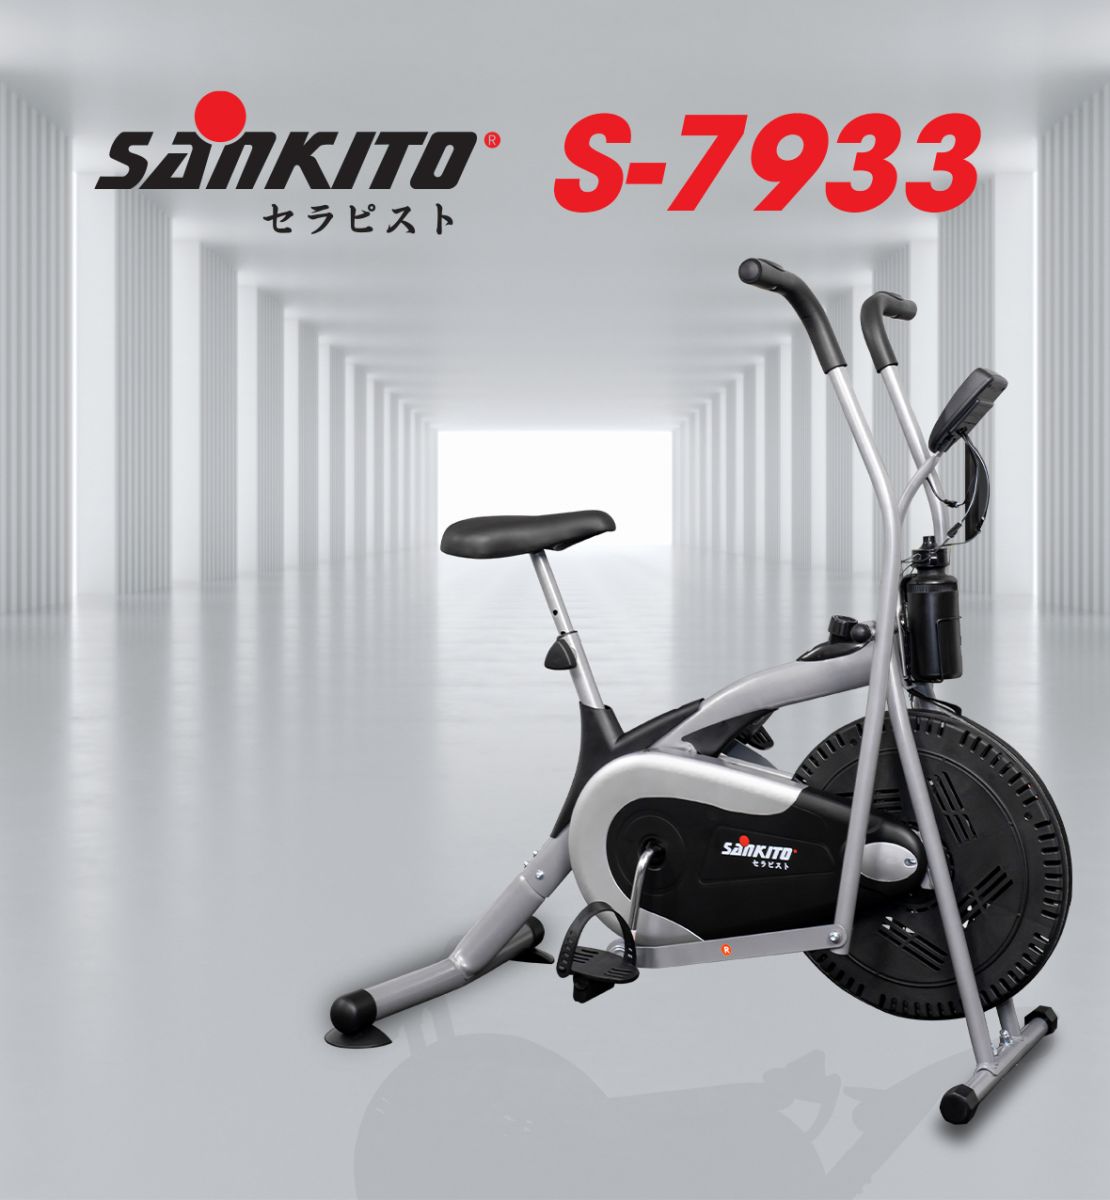 Xe đạp tập Sankito S-7933